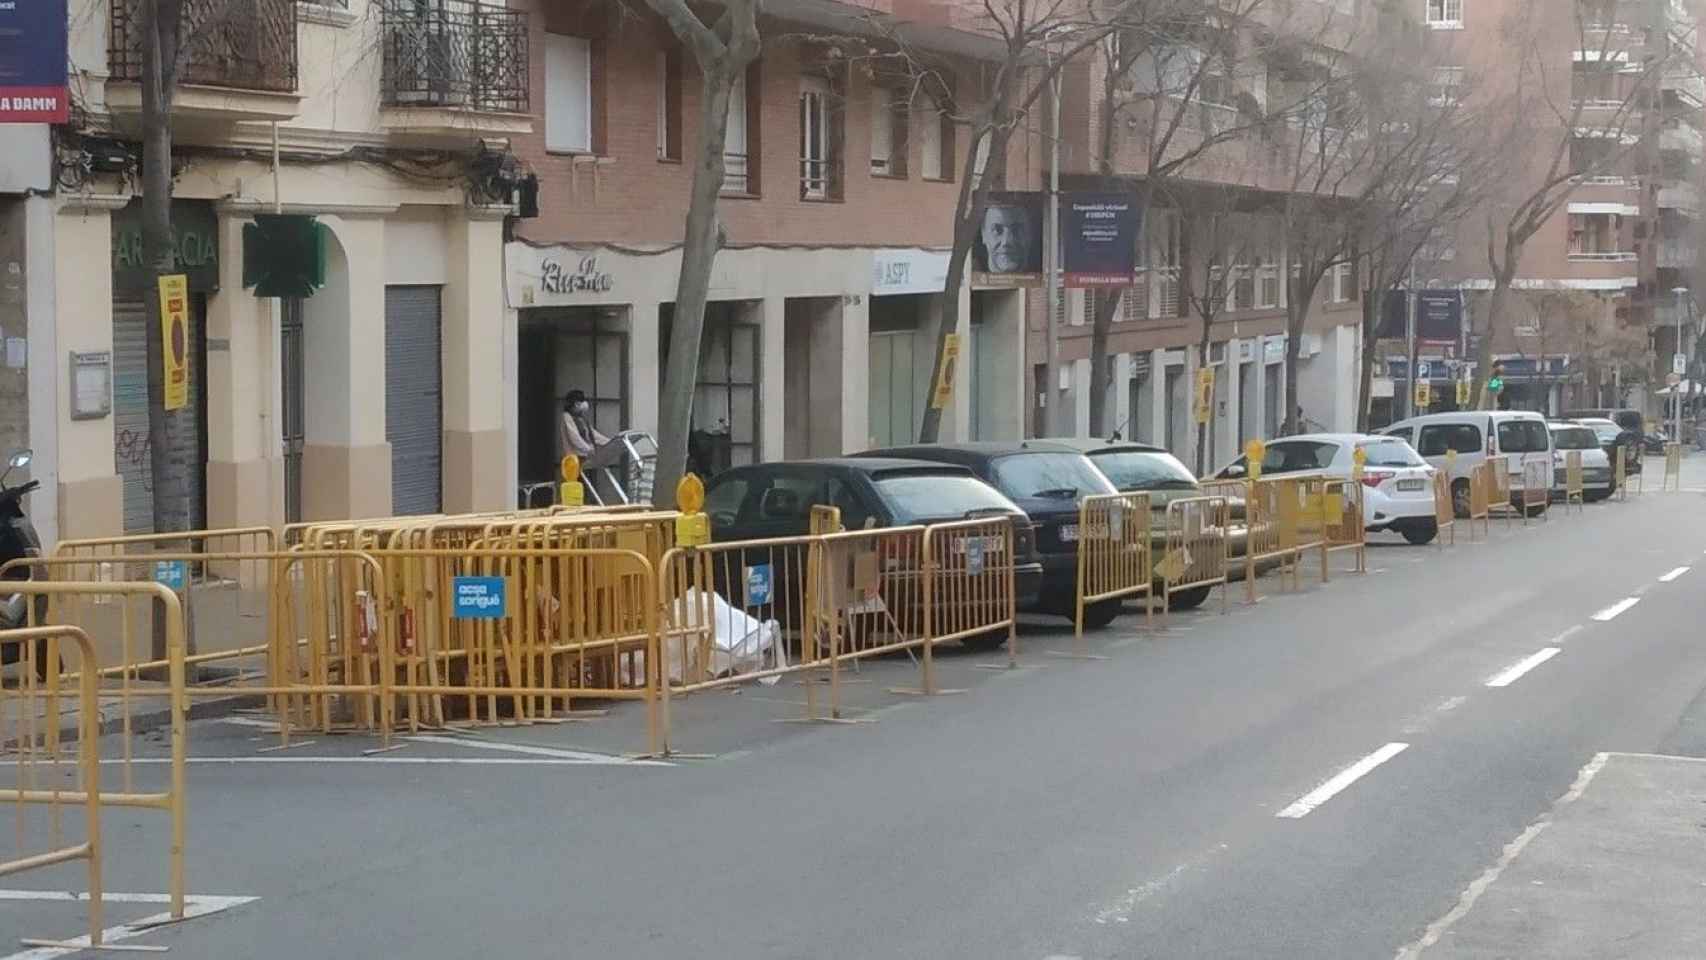 Aparcar en Barcelona, una actividad de riesgo: coches estacionados entre vallas / METRÓPOLI ABIERTA - JORDI SUBIRANA